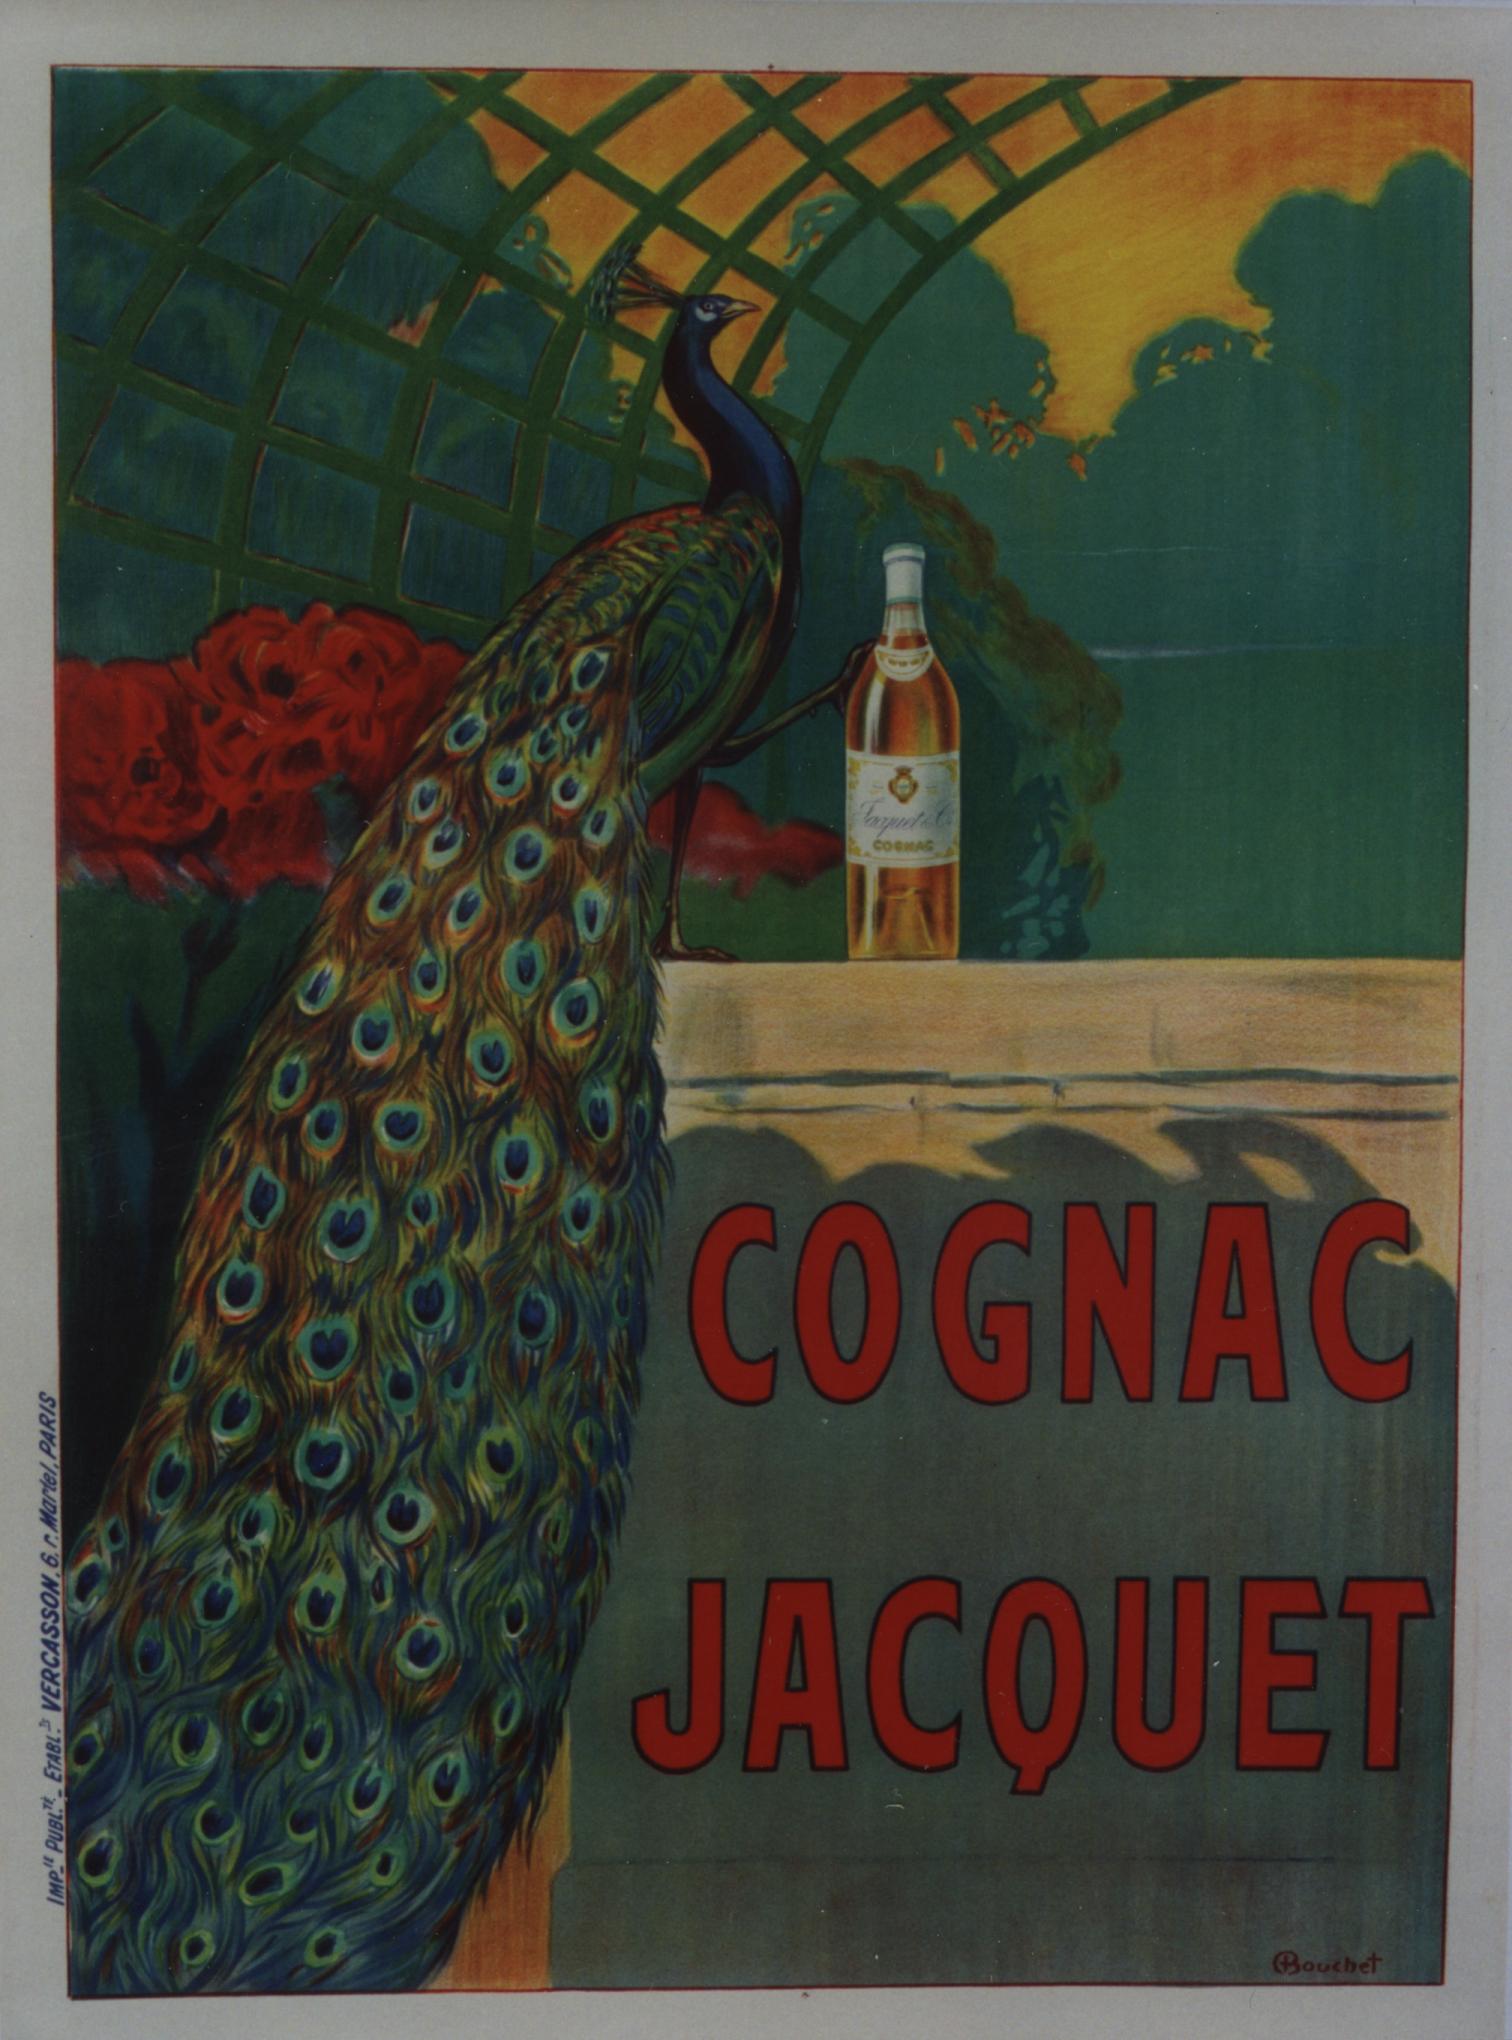 Camille Bouchet Animal Print - Cognac Jacquet.